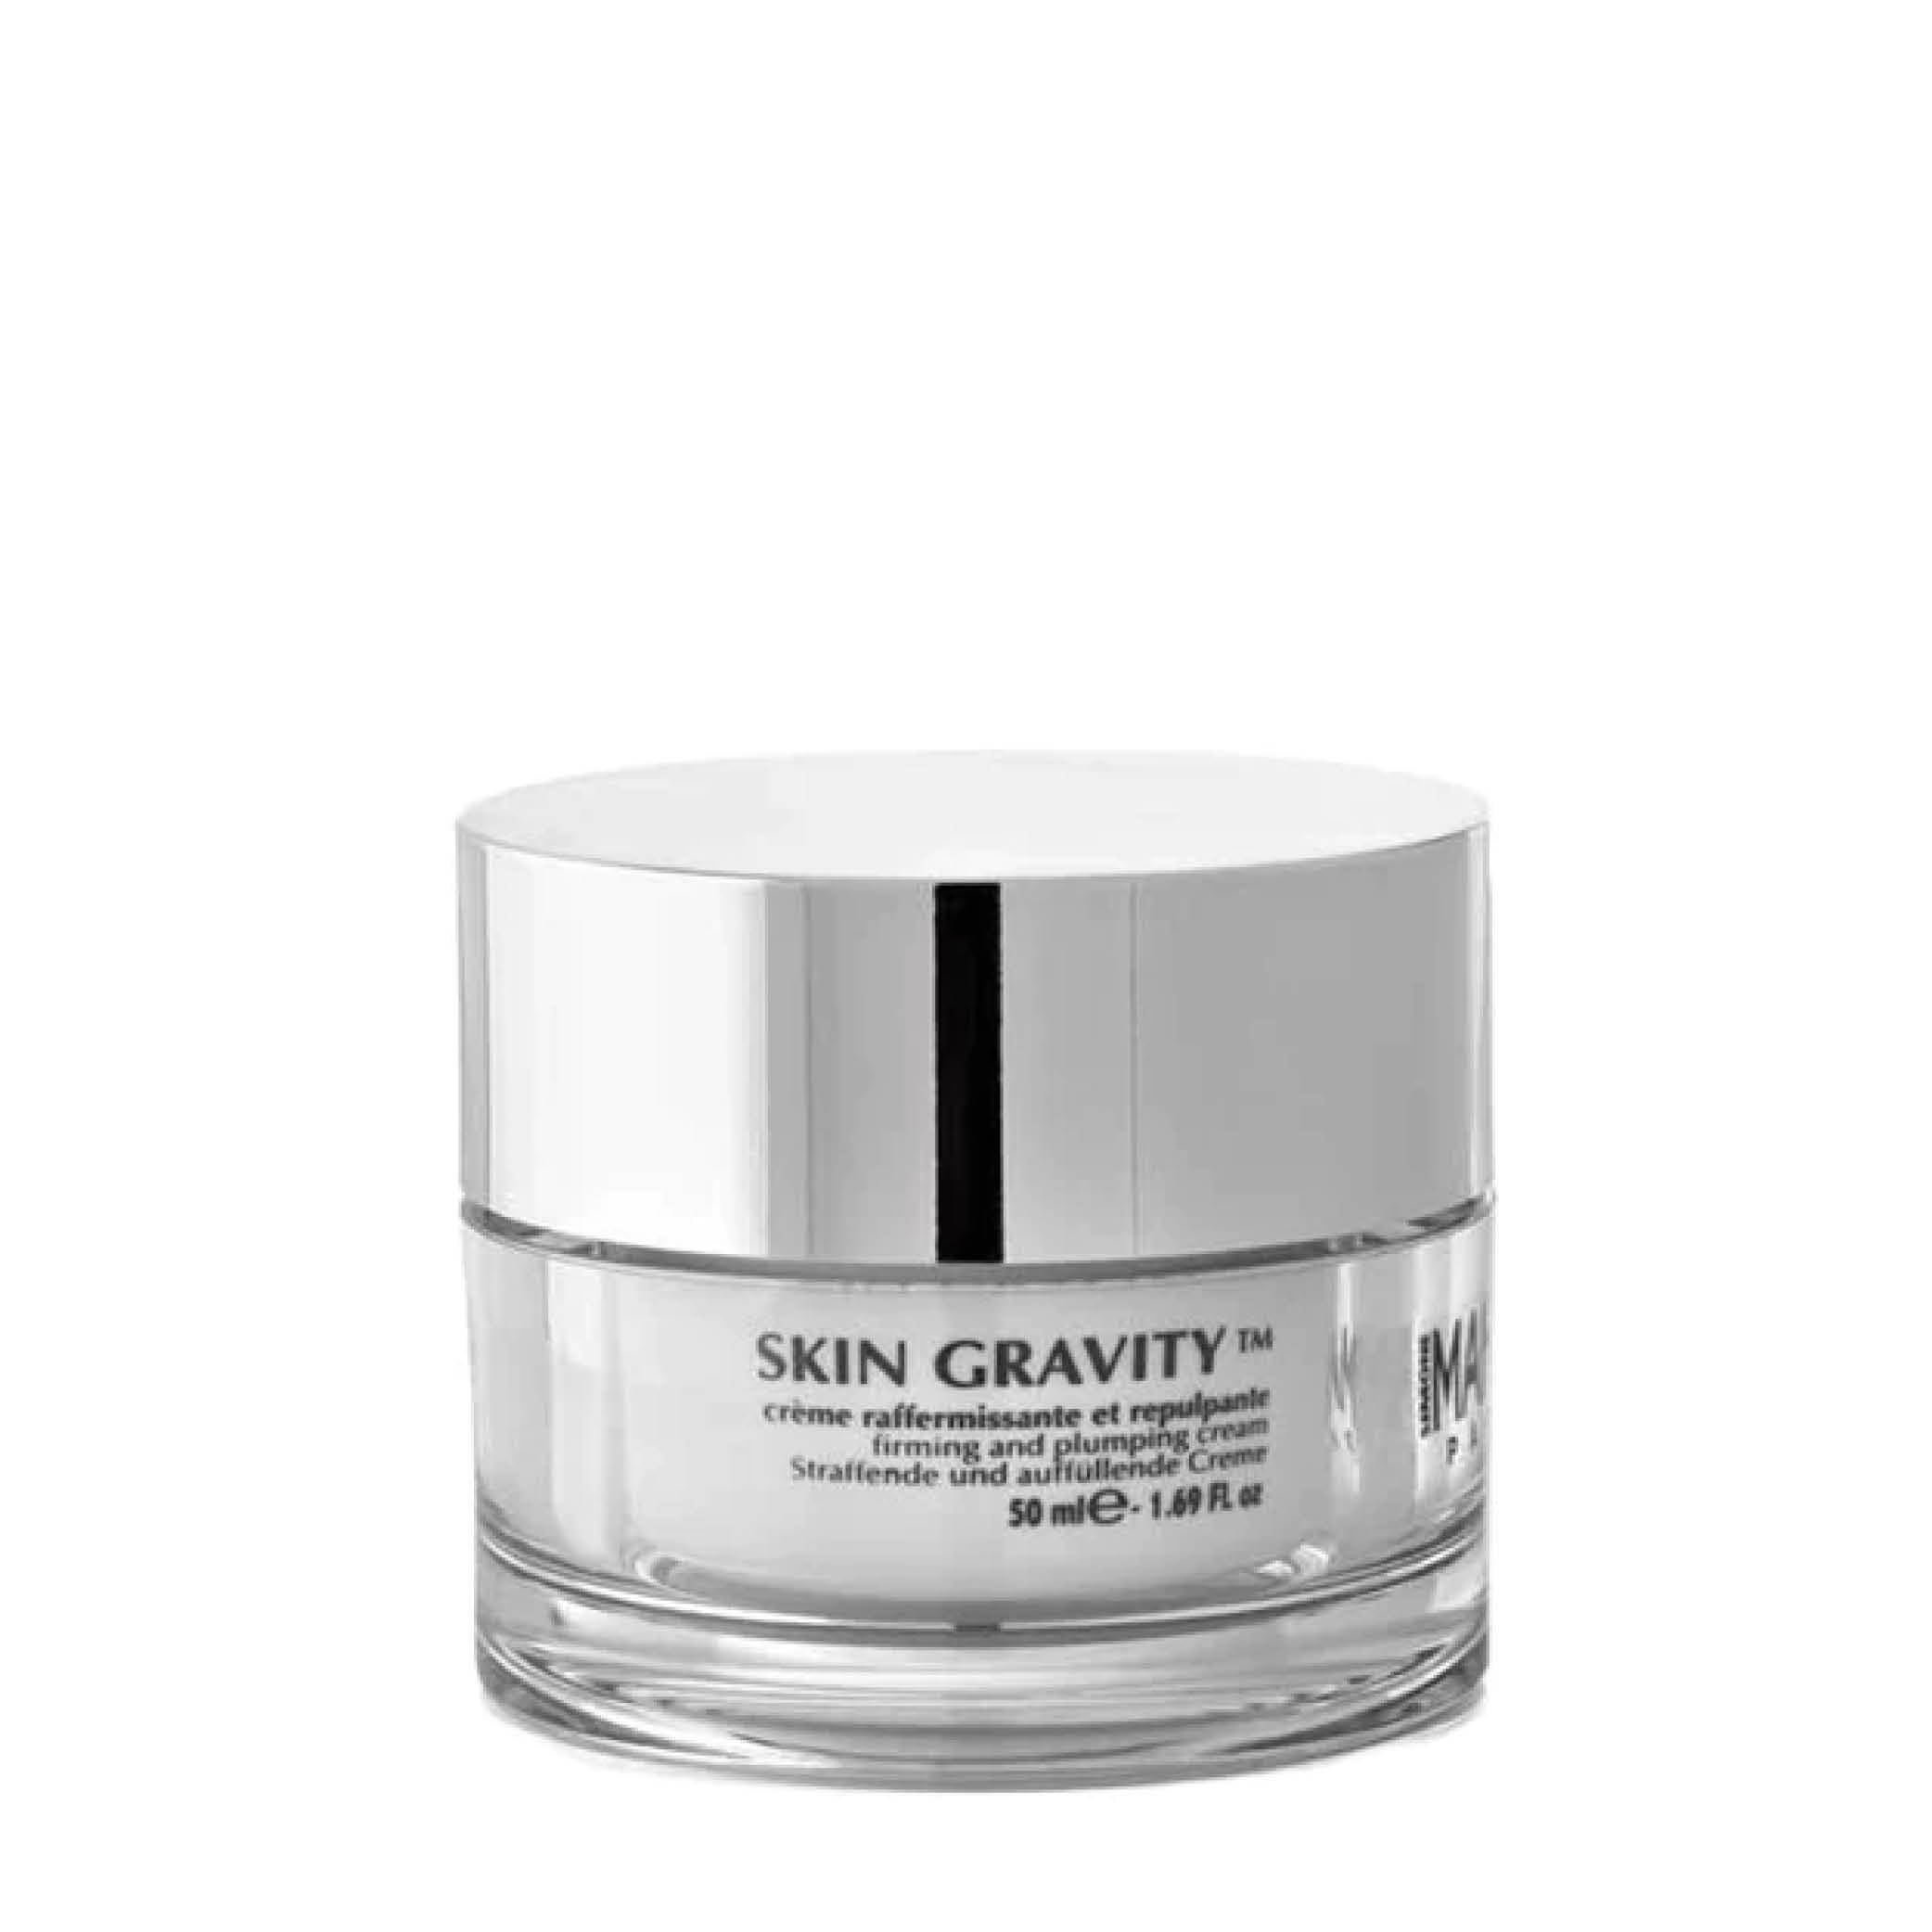 Skin Gravity Cream